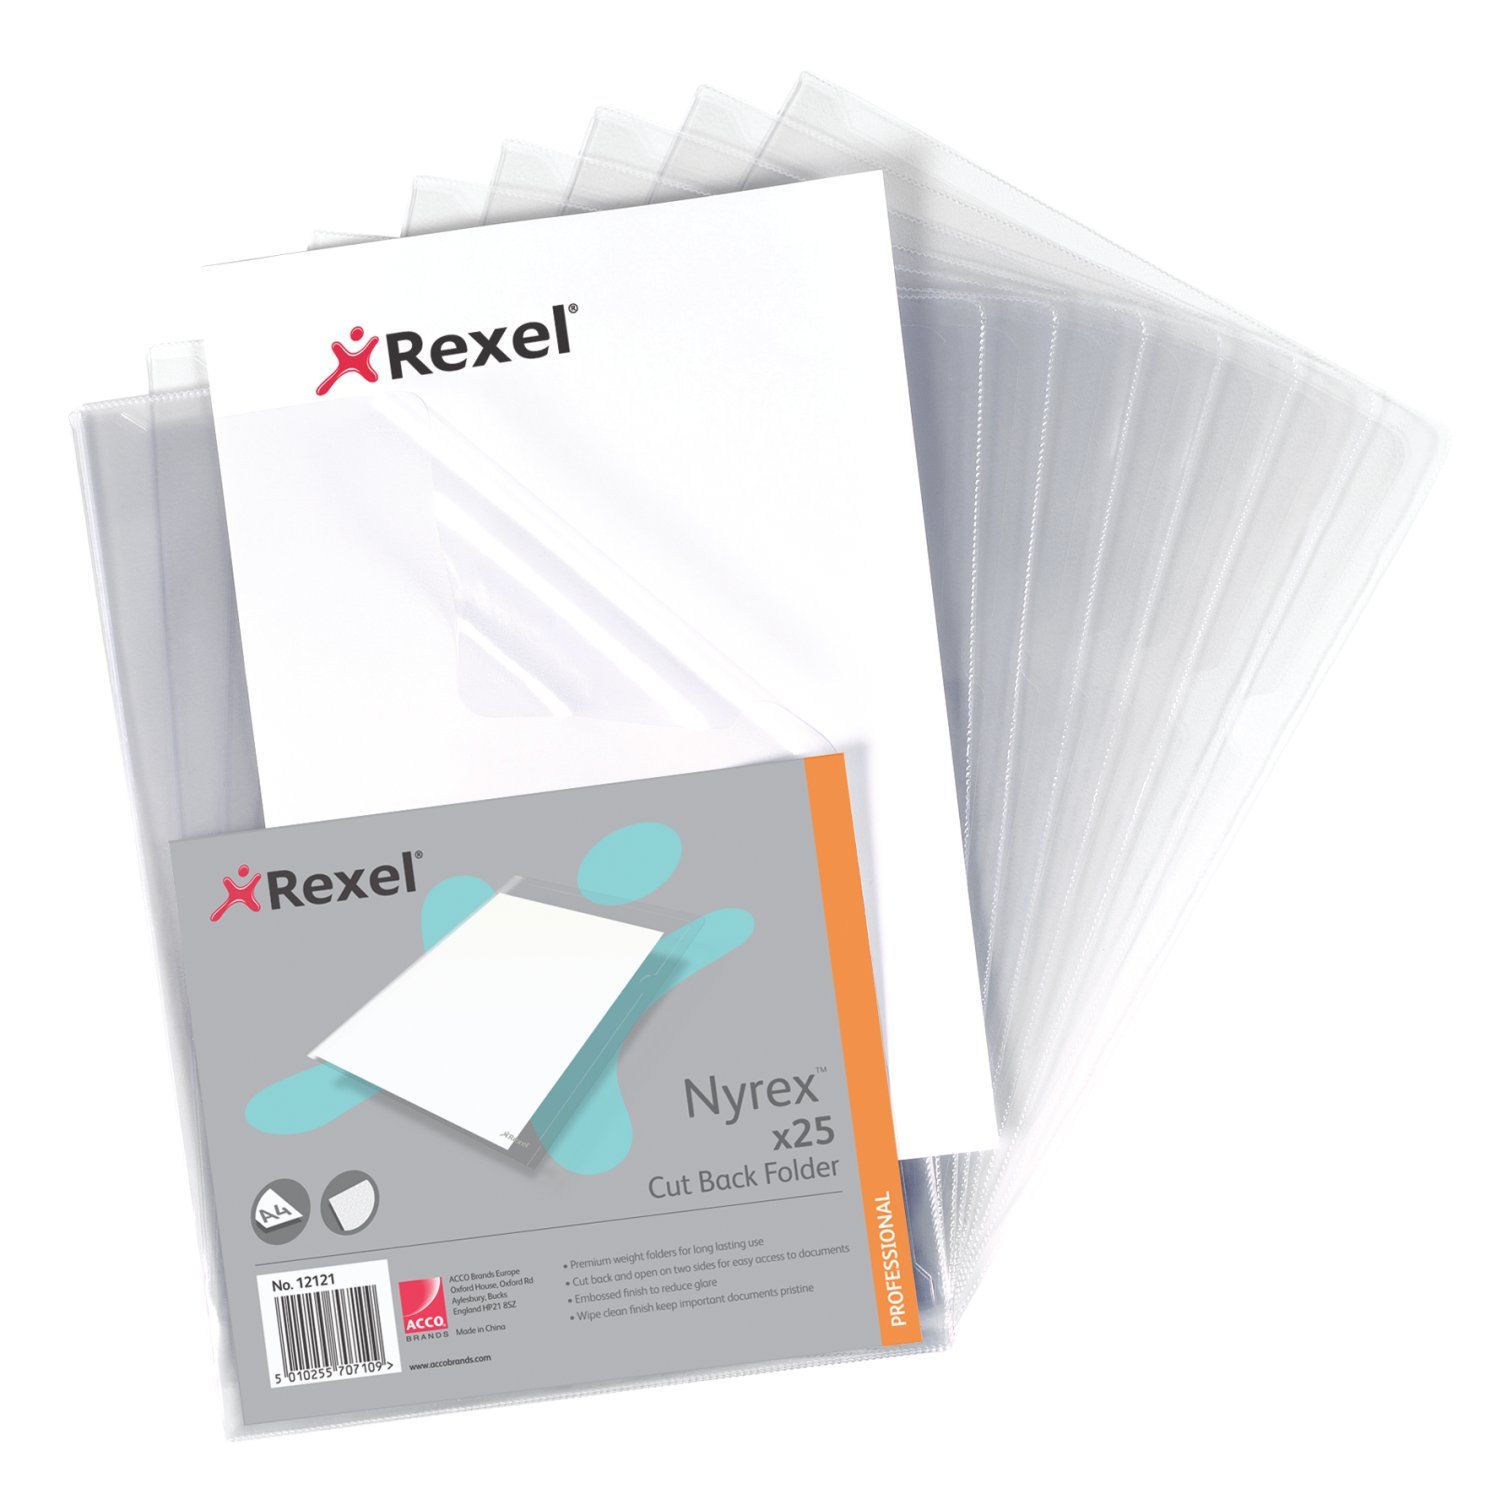 Rx Nyrex Folder Cut Back A4 Clear PK25